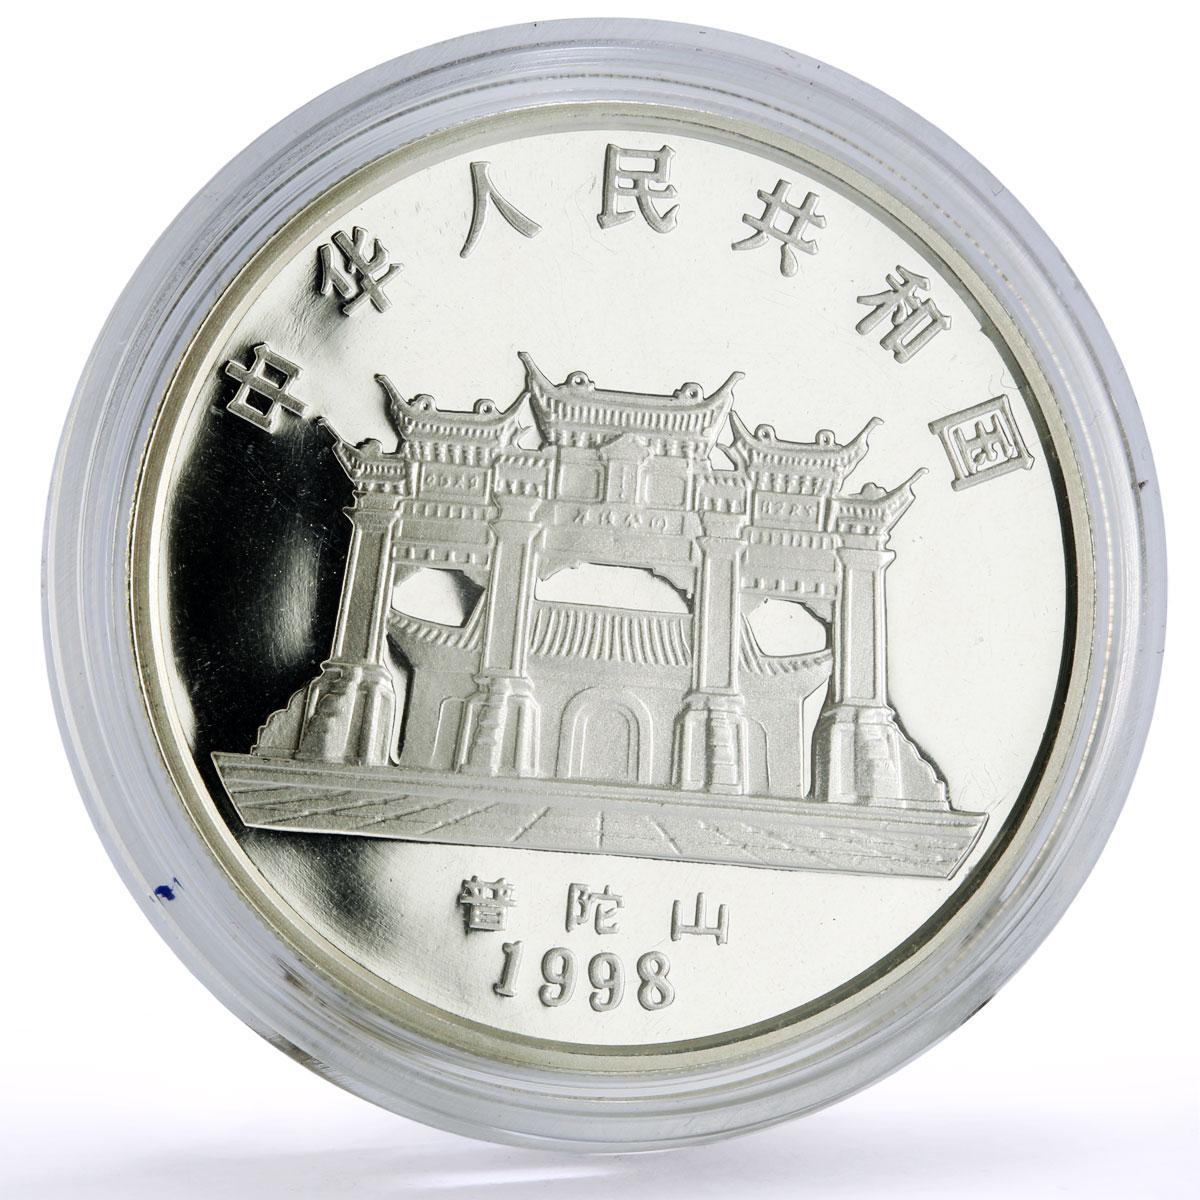 China 10 yuan Buddhism Goddess Guanyin Kuan Yin Temple proof silver coin 1998